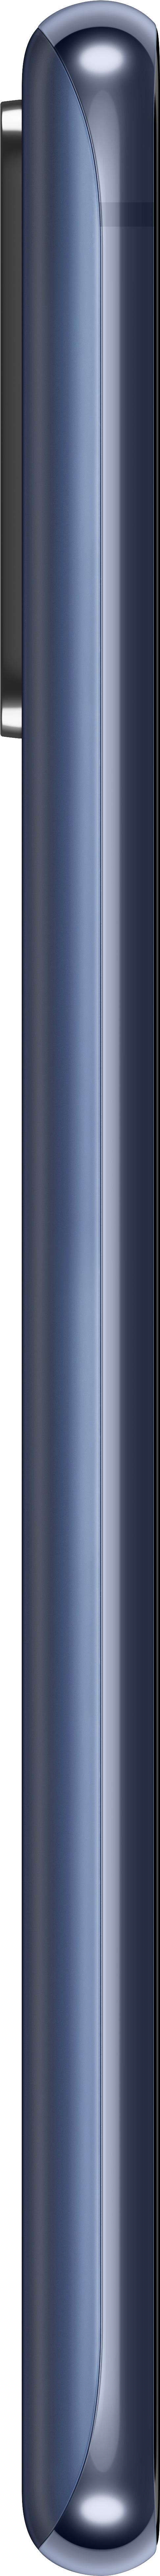 Samsung Galaxy S20 FE (SM-G780FZBDEUB)